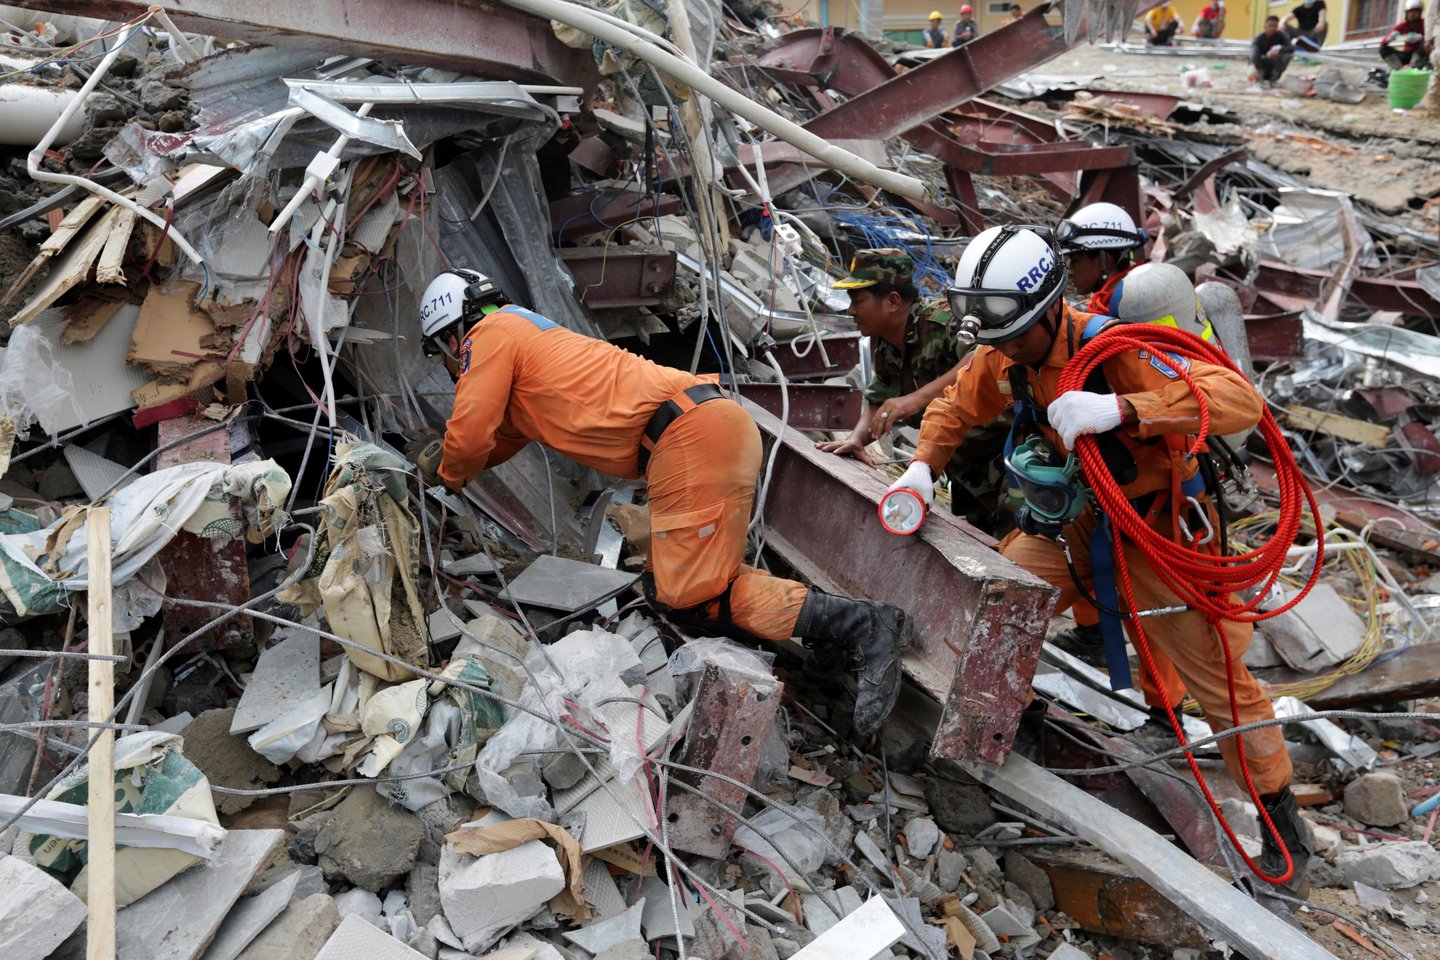 Darbo ir profesinio parengimo ministerija nurodė, kad sugriuvusiame pastate buvo 30 darbininkų<br> AFP/Scanpix nuotr.